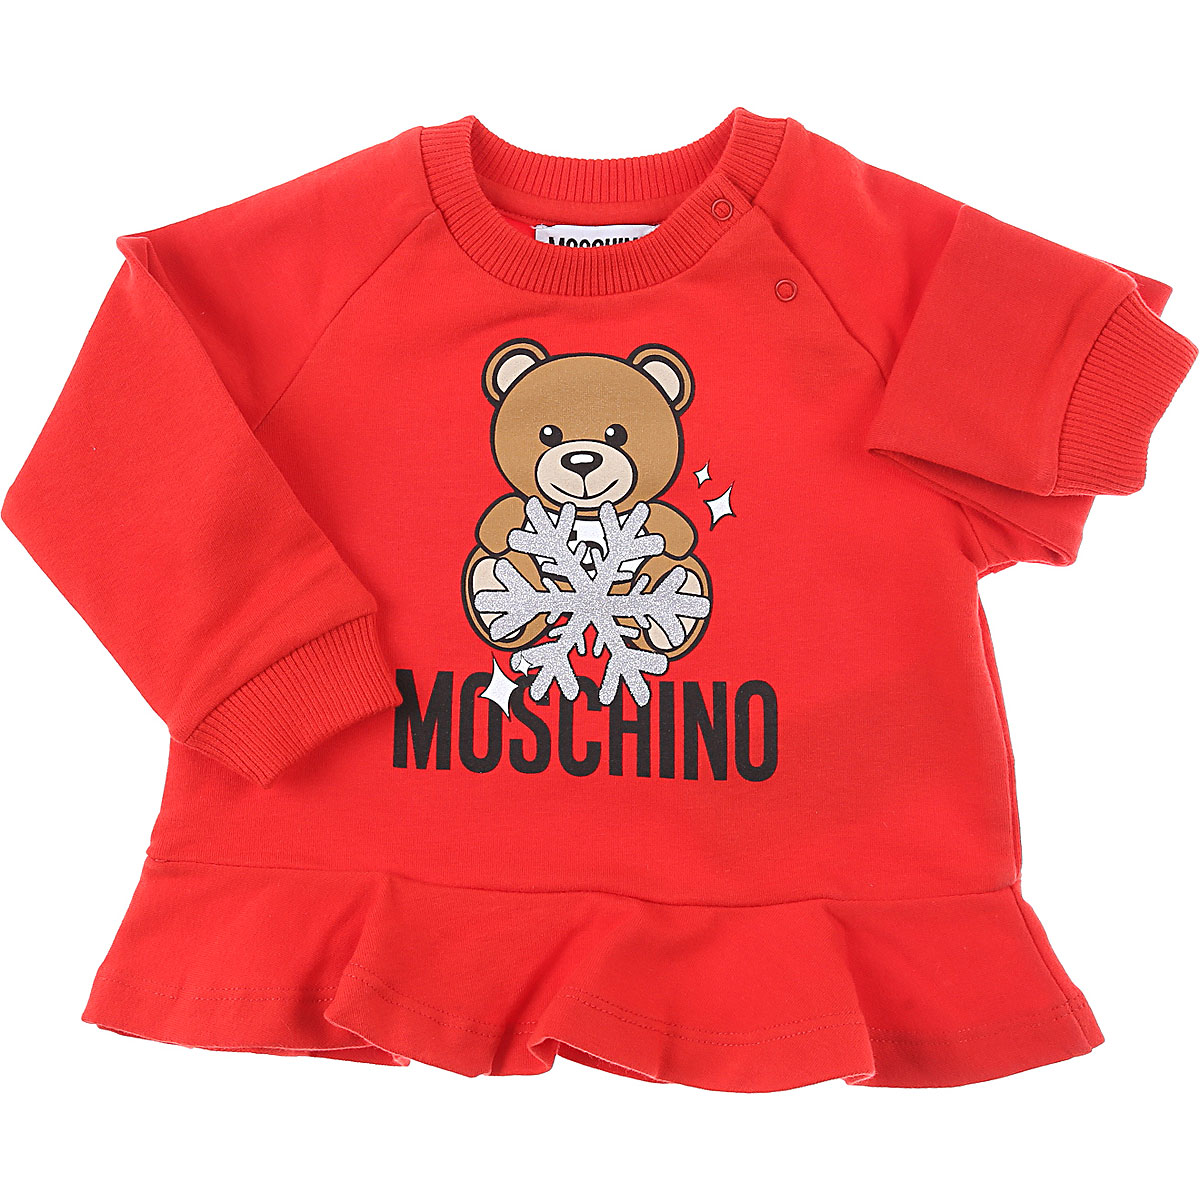 Moschino Baby Sweatshirt & Kapuzenpullover für Mädchen Günstig im Sale, Rot, Baumwolle, 2017, 12M 18M 18M 24M 2Y 3Y 6M 6M 9M 9M